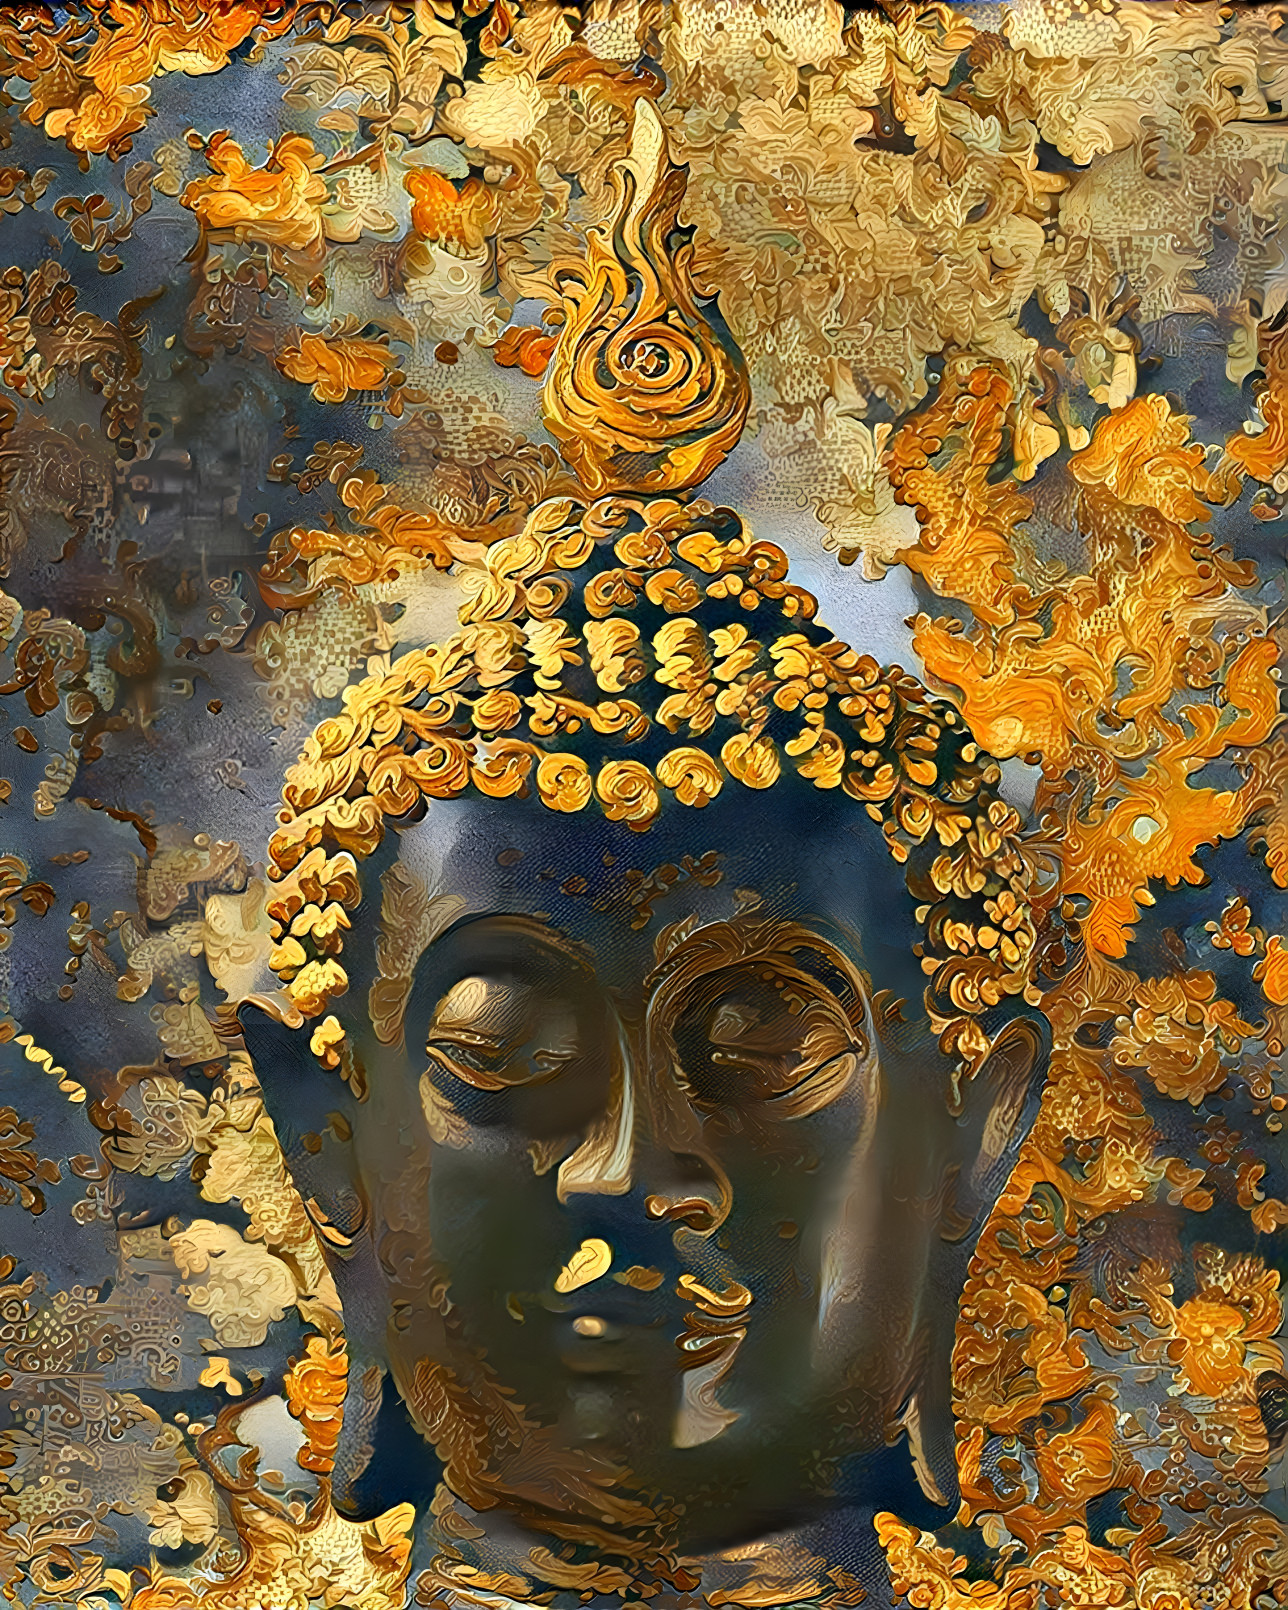 Golden Buddha 